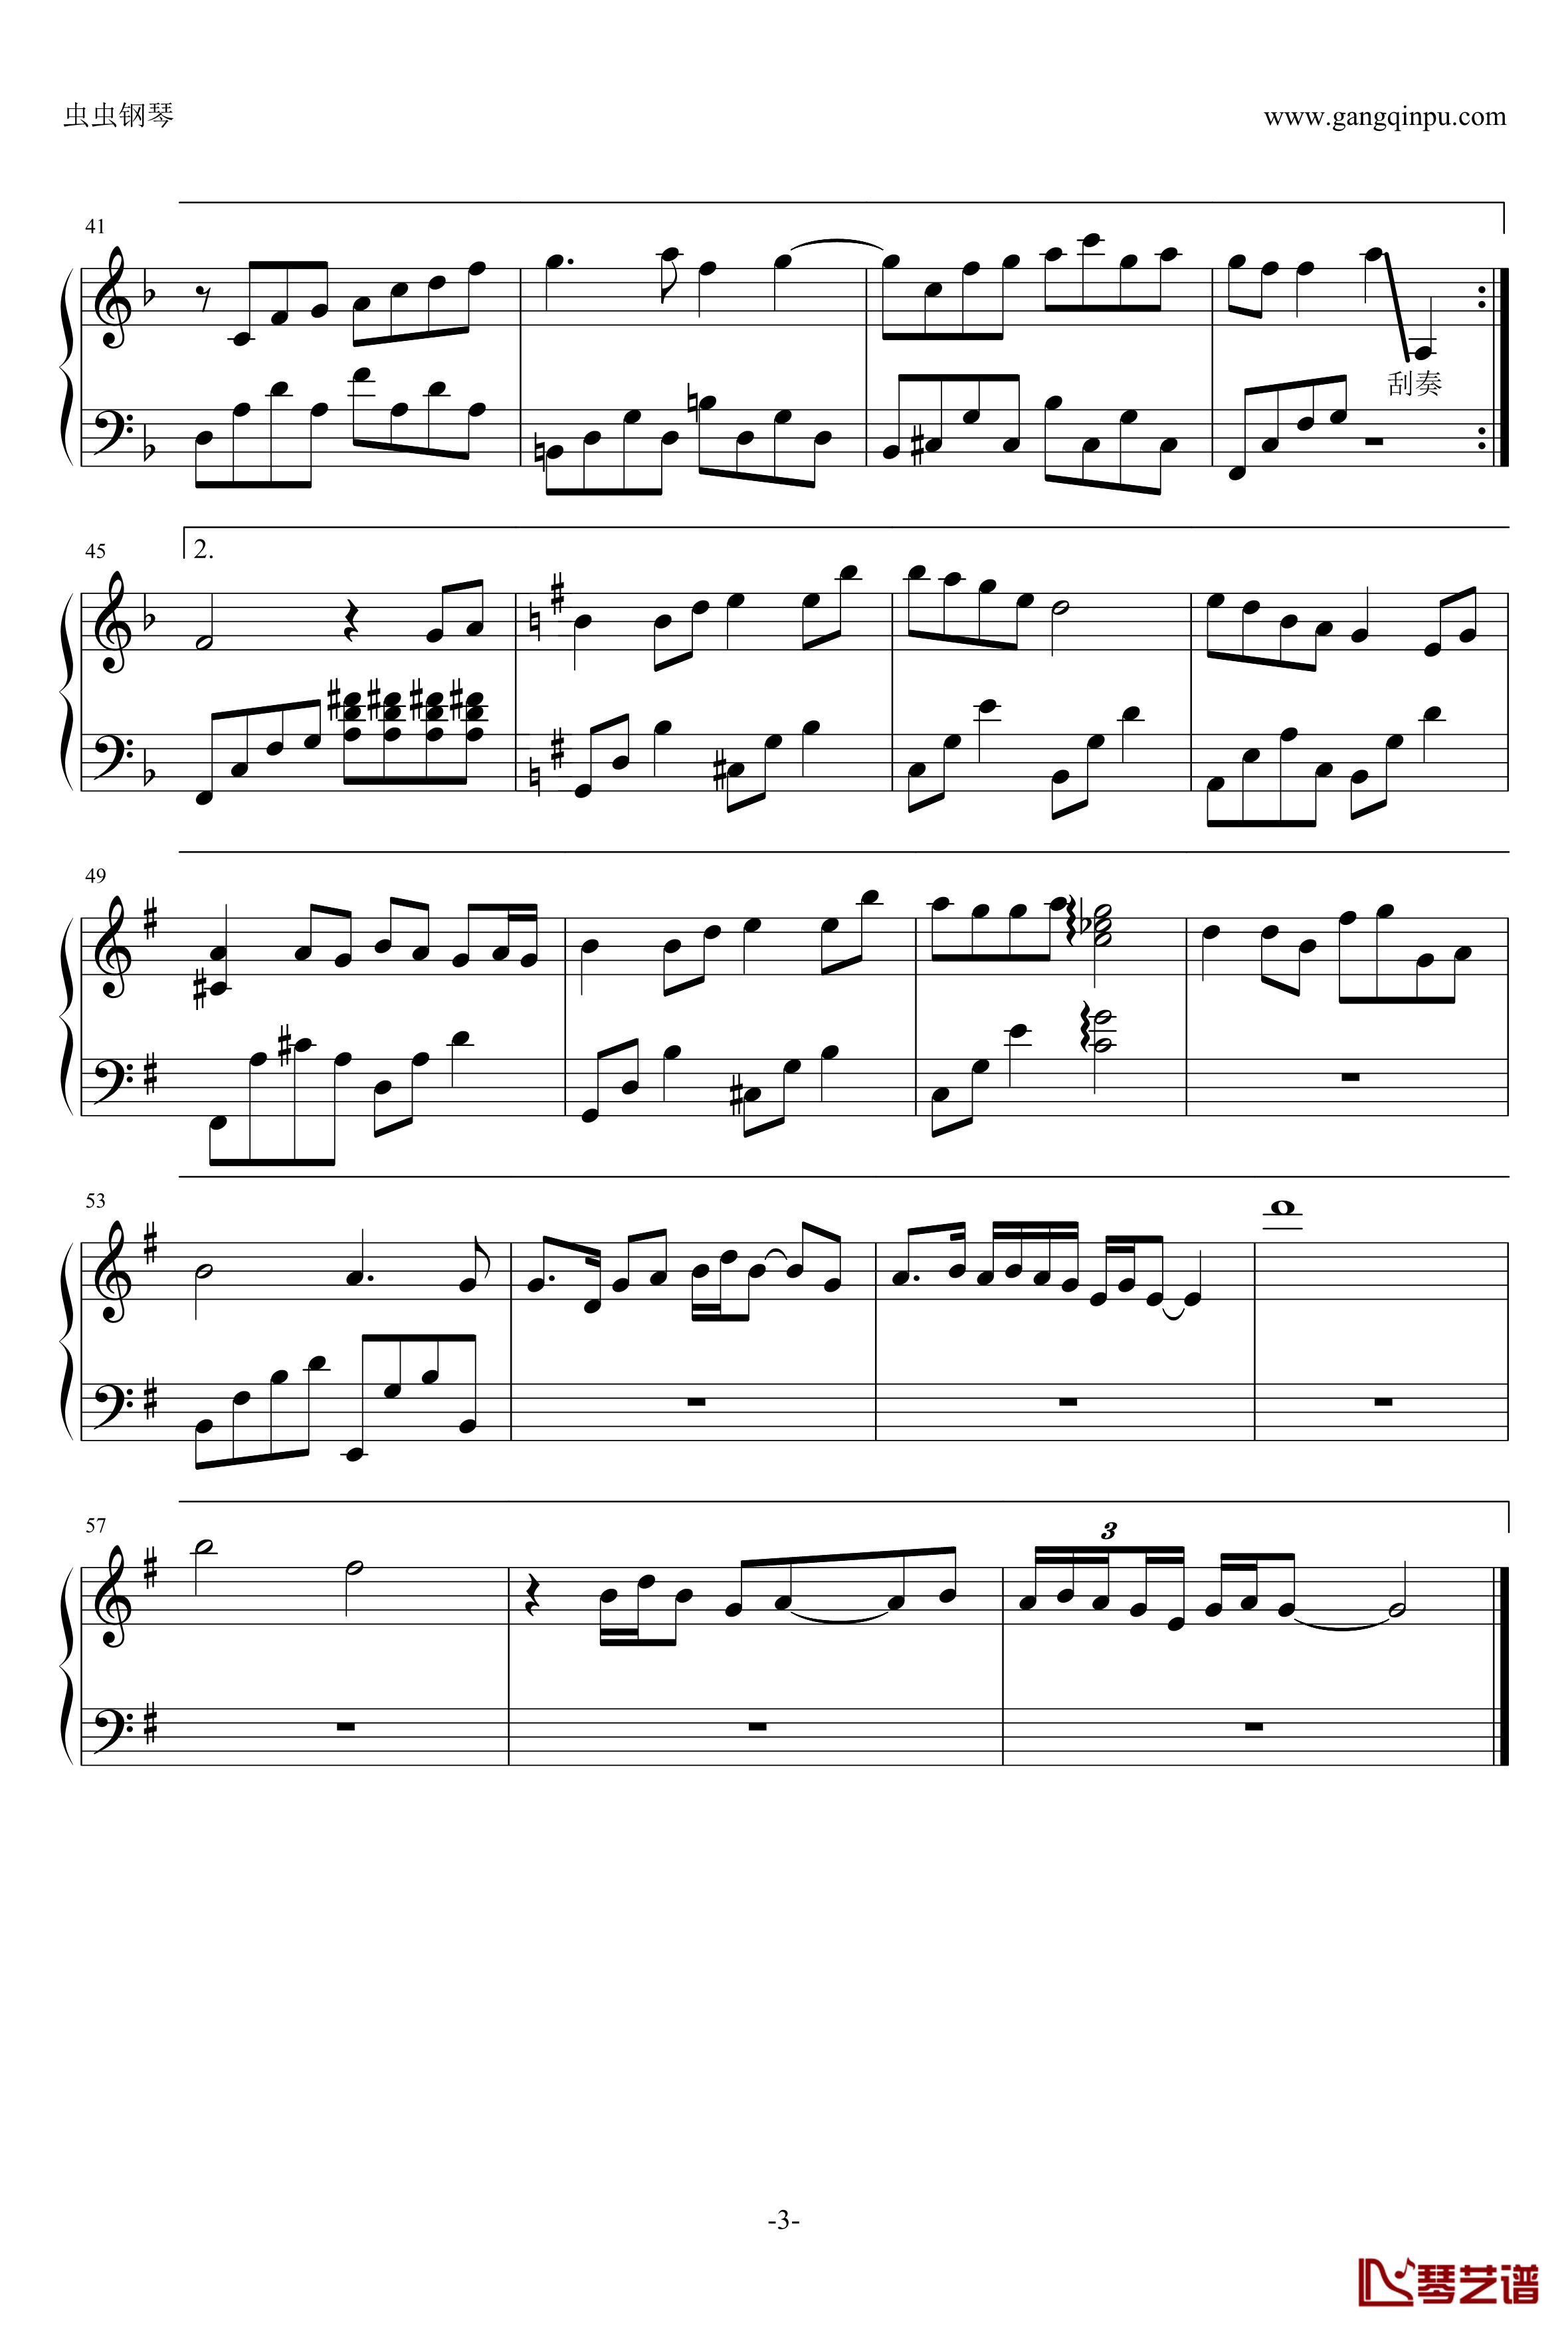 菊花台钢琴谱-金龙鱼钢琴简化独奏170206-周杰伦